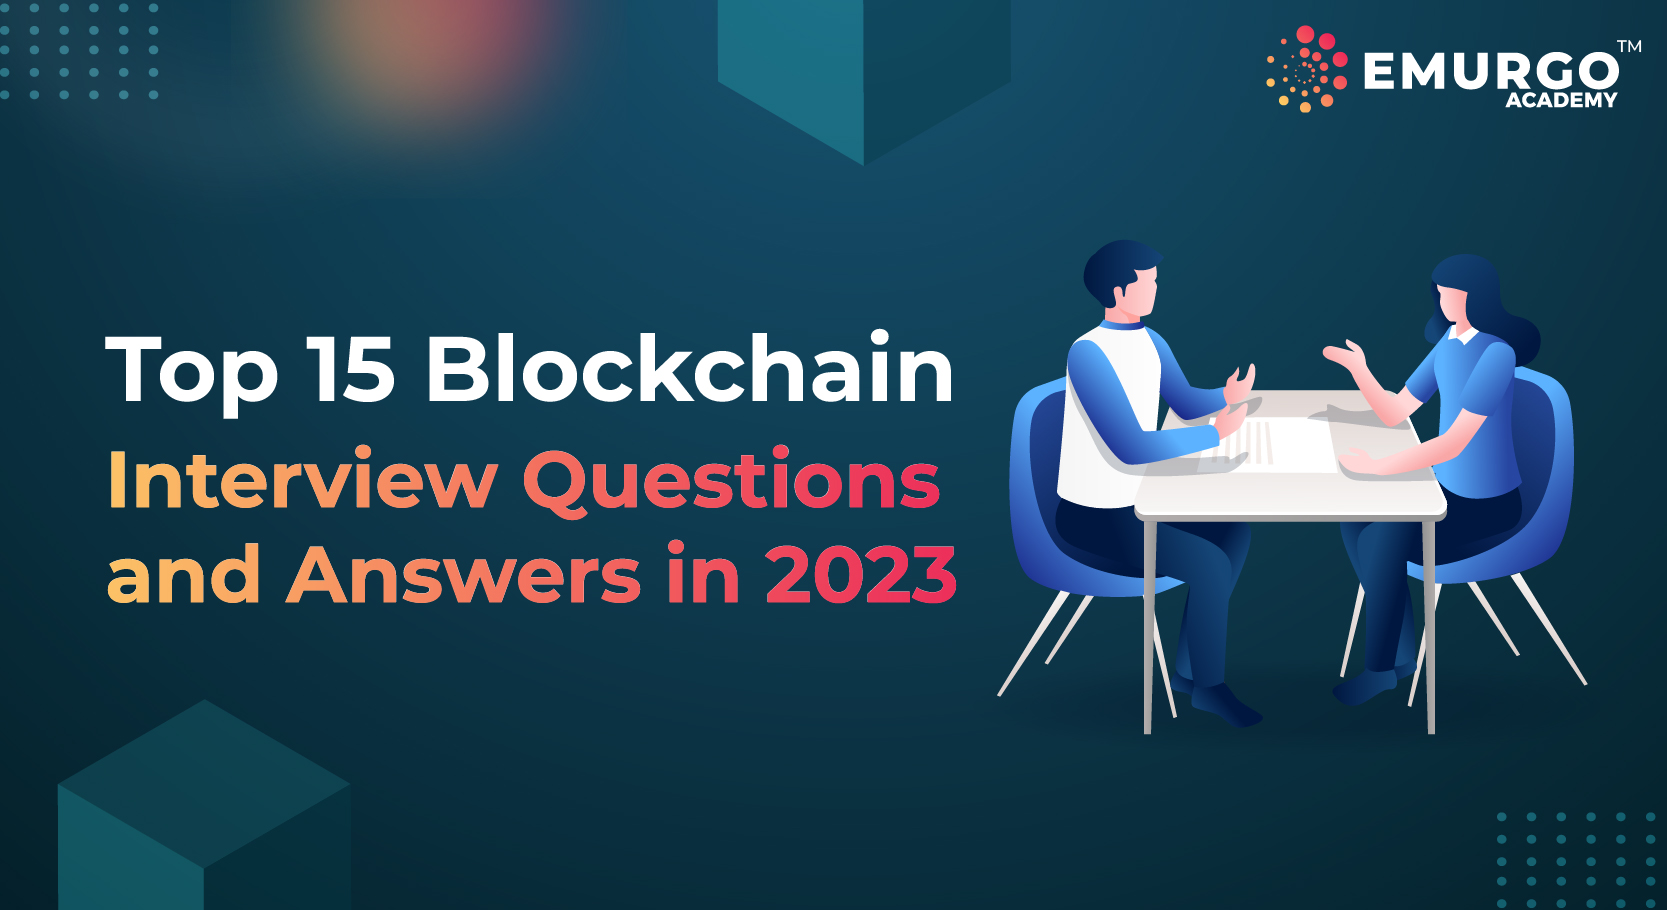 Top 15 Blockchain Interview